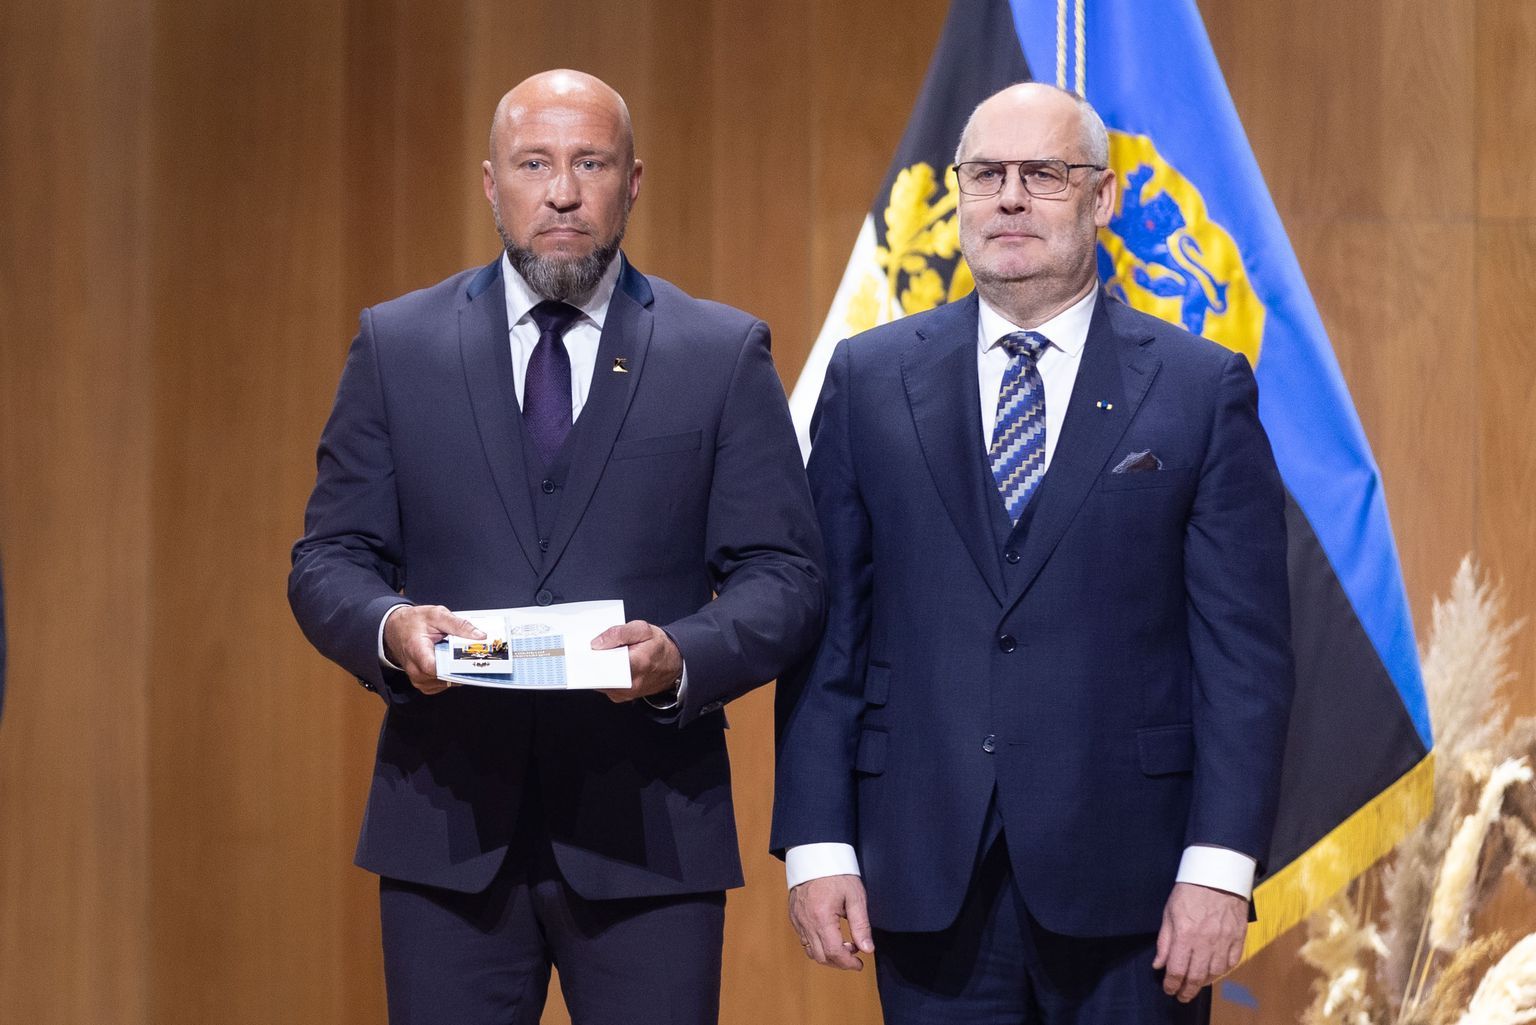 Ханнес Перк получает из рук президента Алара Кариса государственную награду.